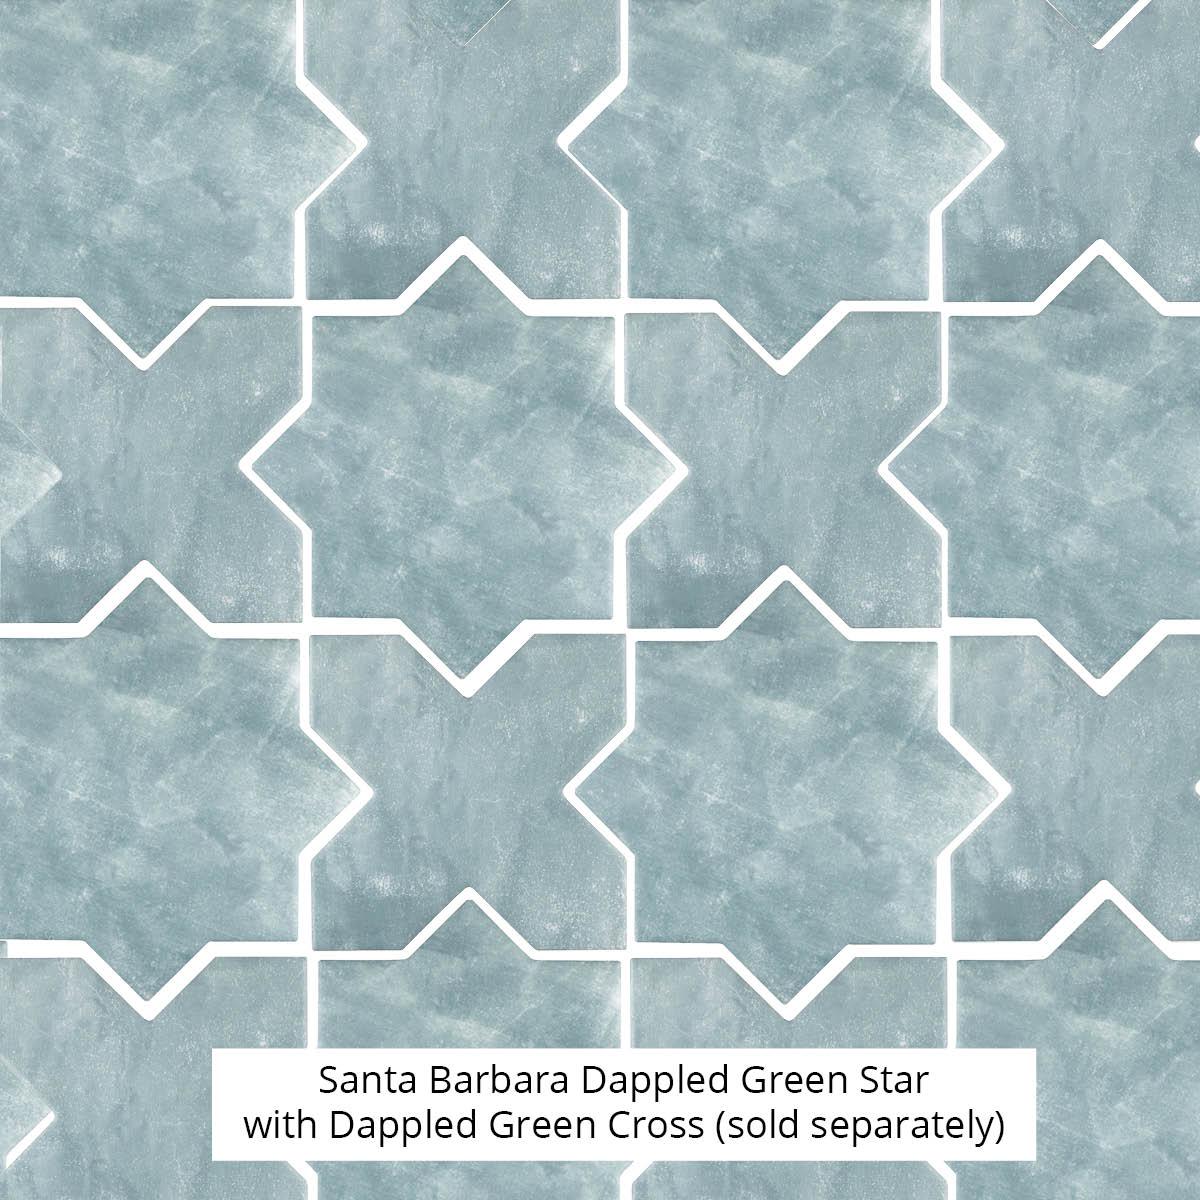 Santa Barbara Dappled Green Star